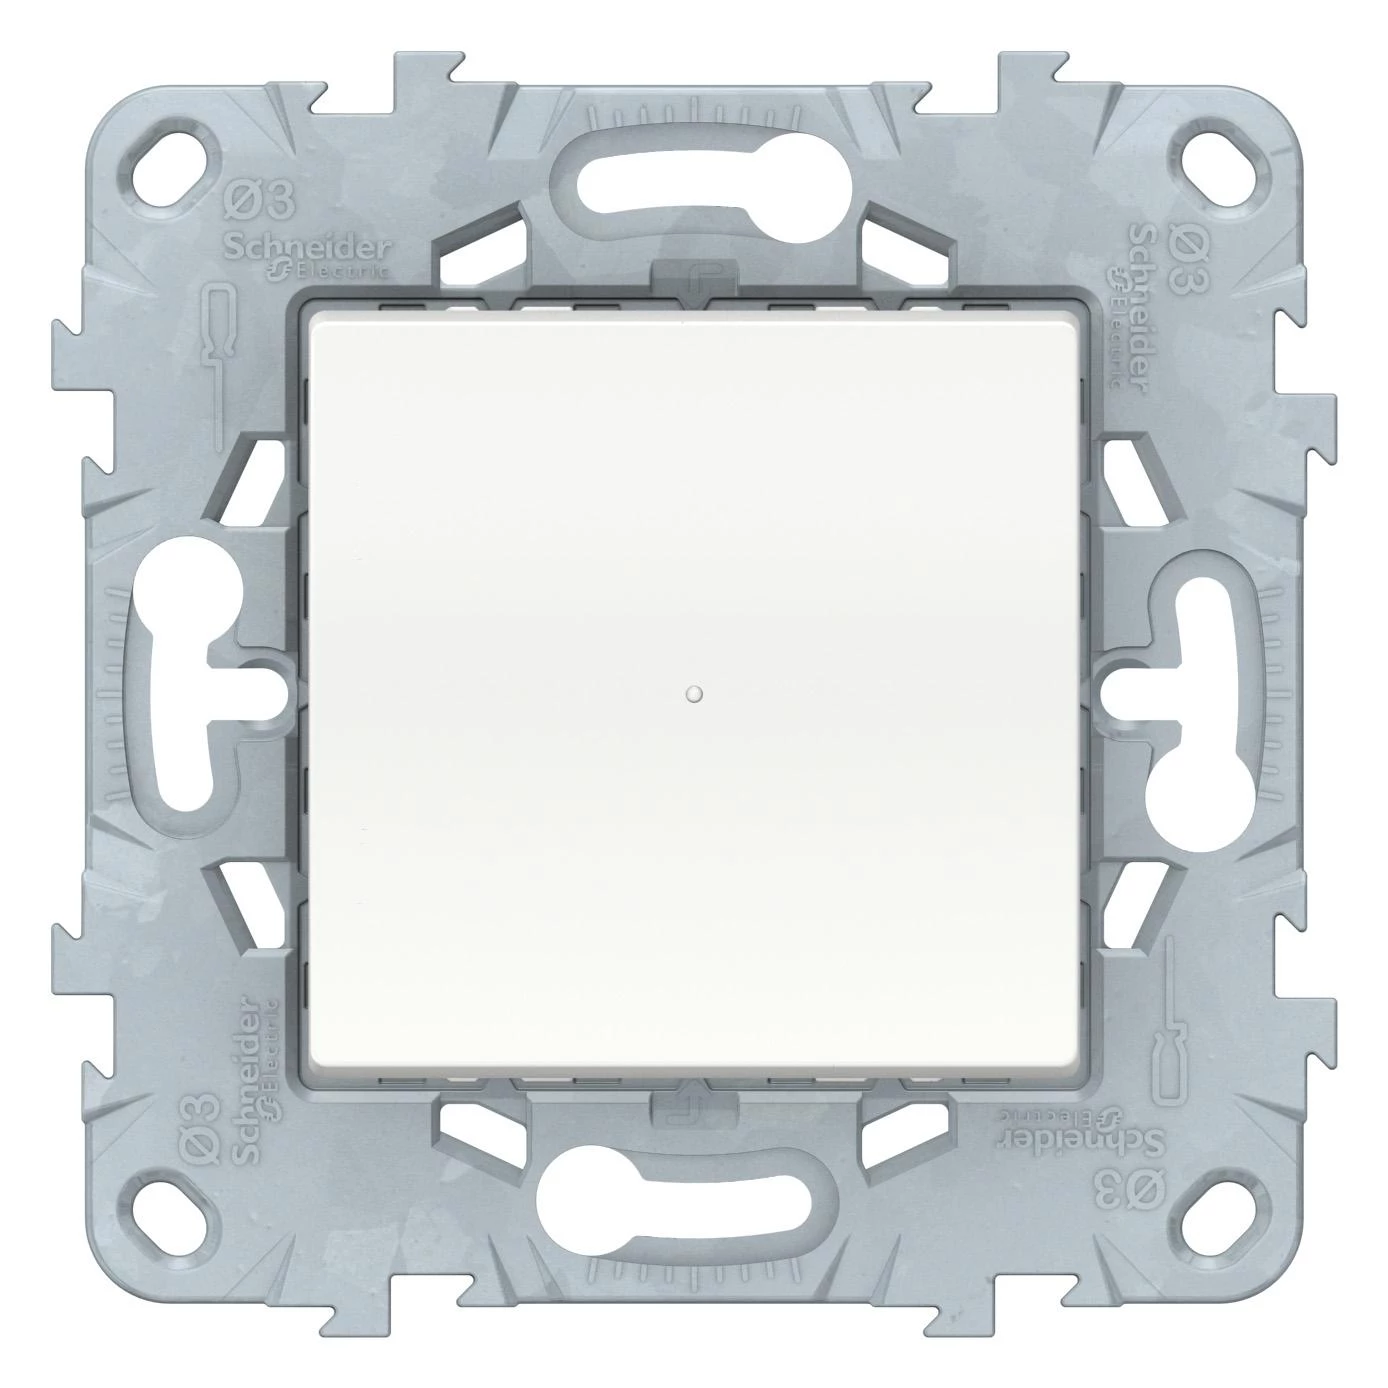  артикул NU551518 название Светорегулятор кнопочный 300Вт (универсальный) , Белый, серия Unica New, Schneider Electric